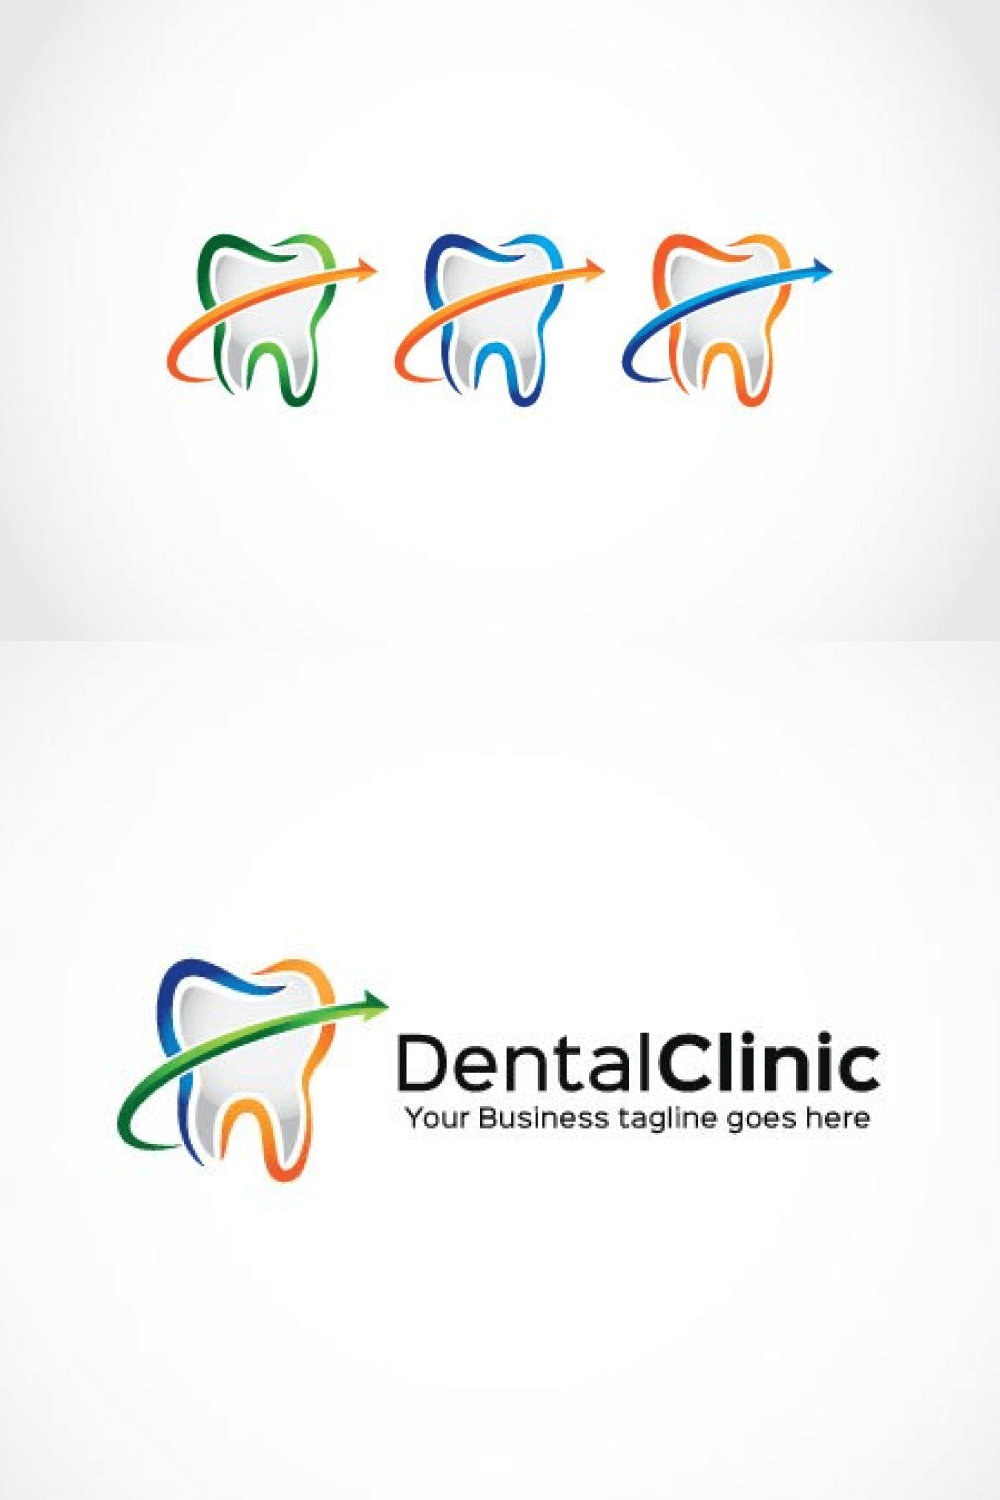 Logo DentalClinic on White Background.